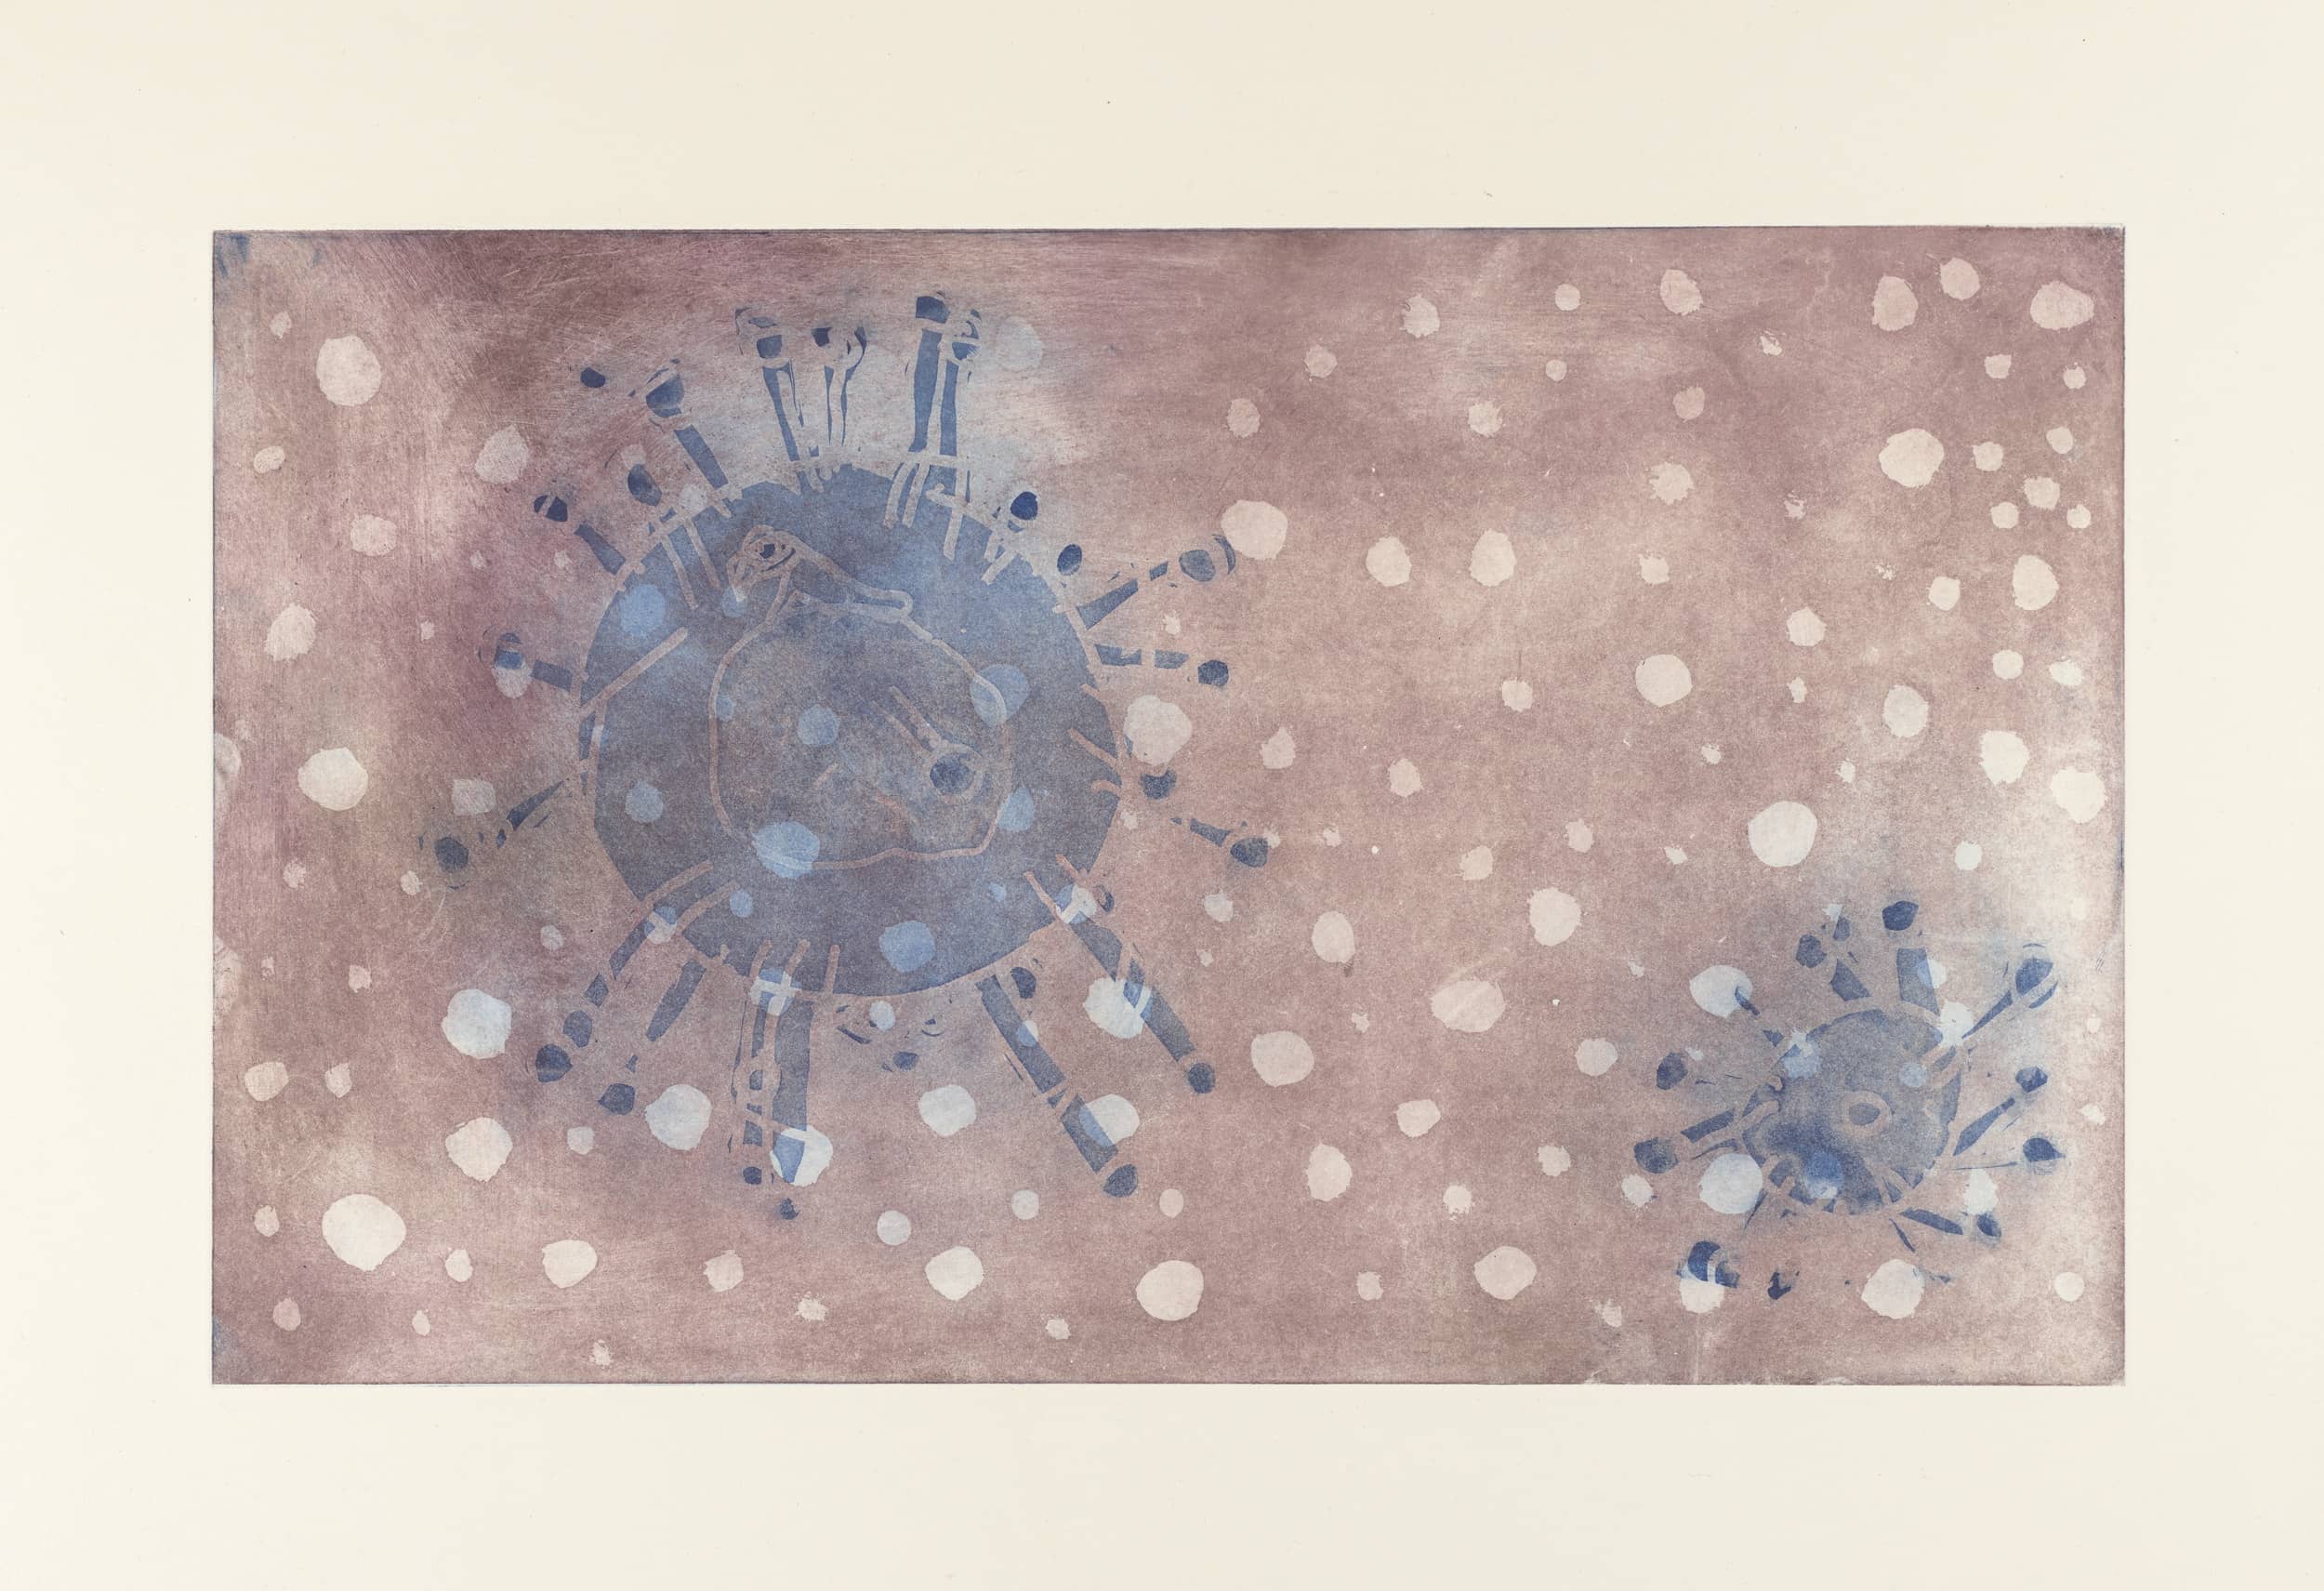 Gravure - Eau forte et aquatinte sur deux plaques superposées - Coronavirus